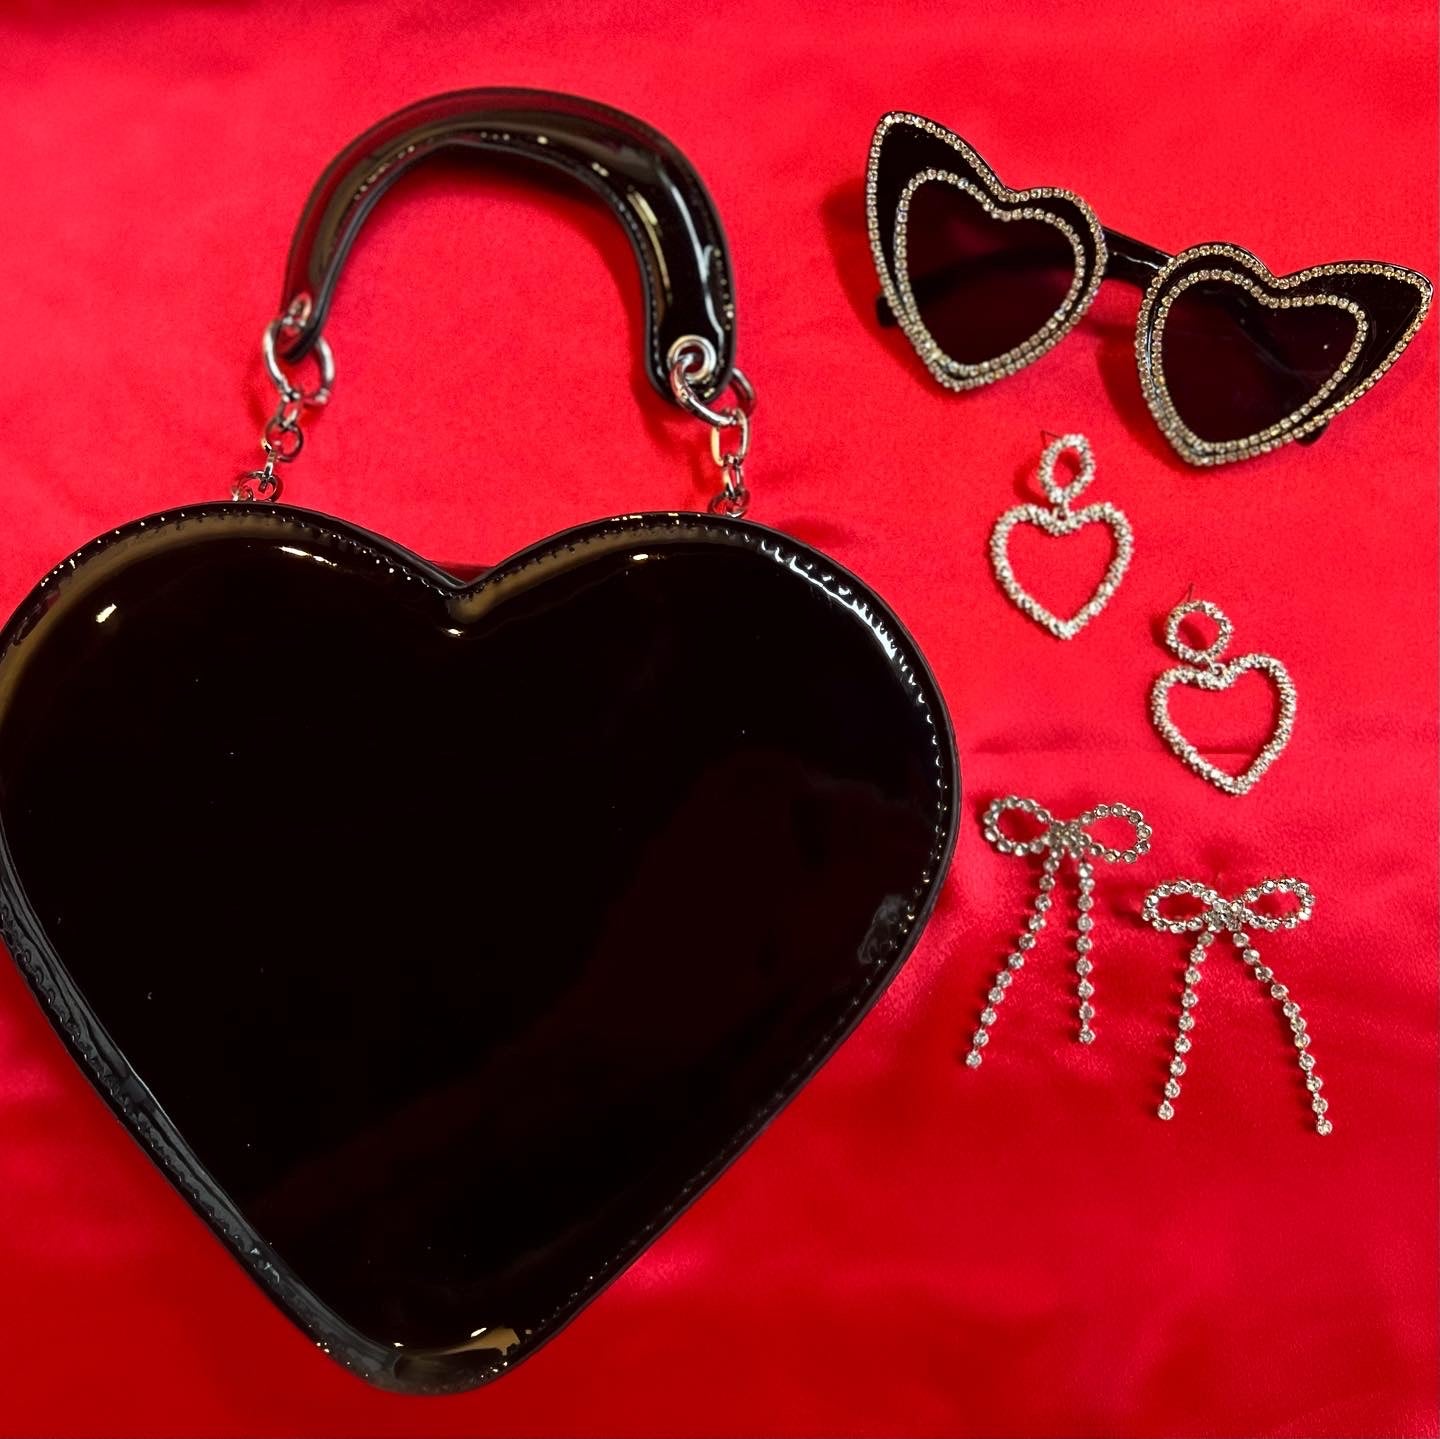 Heart On Handbag